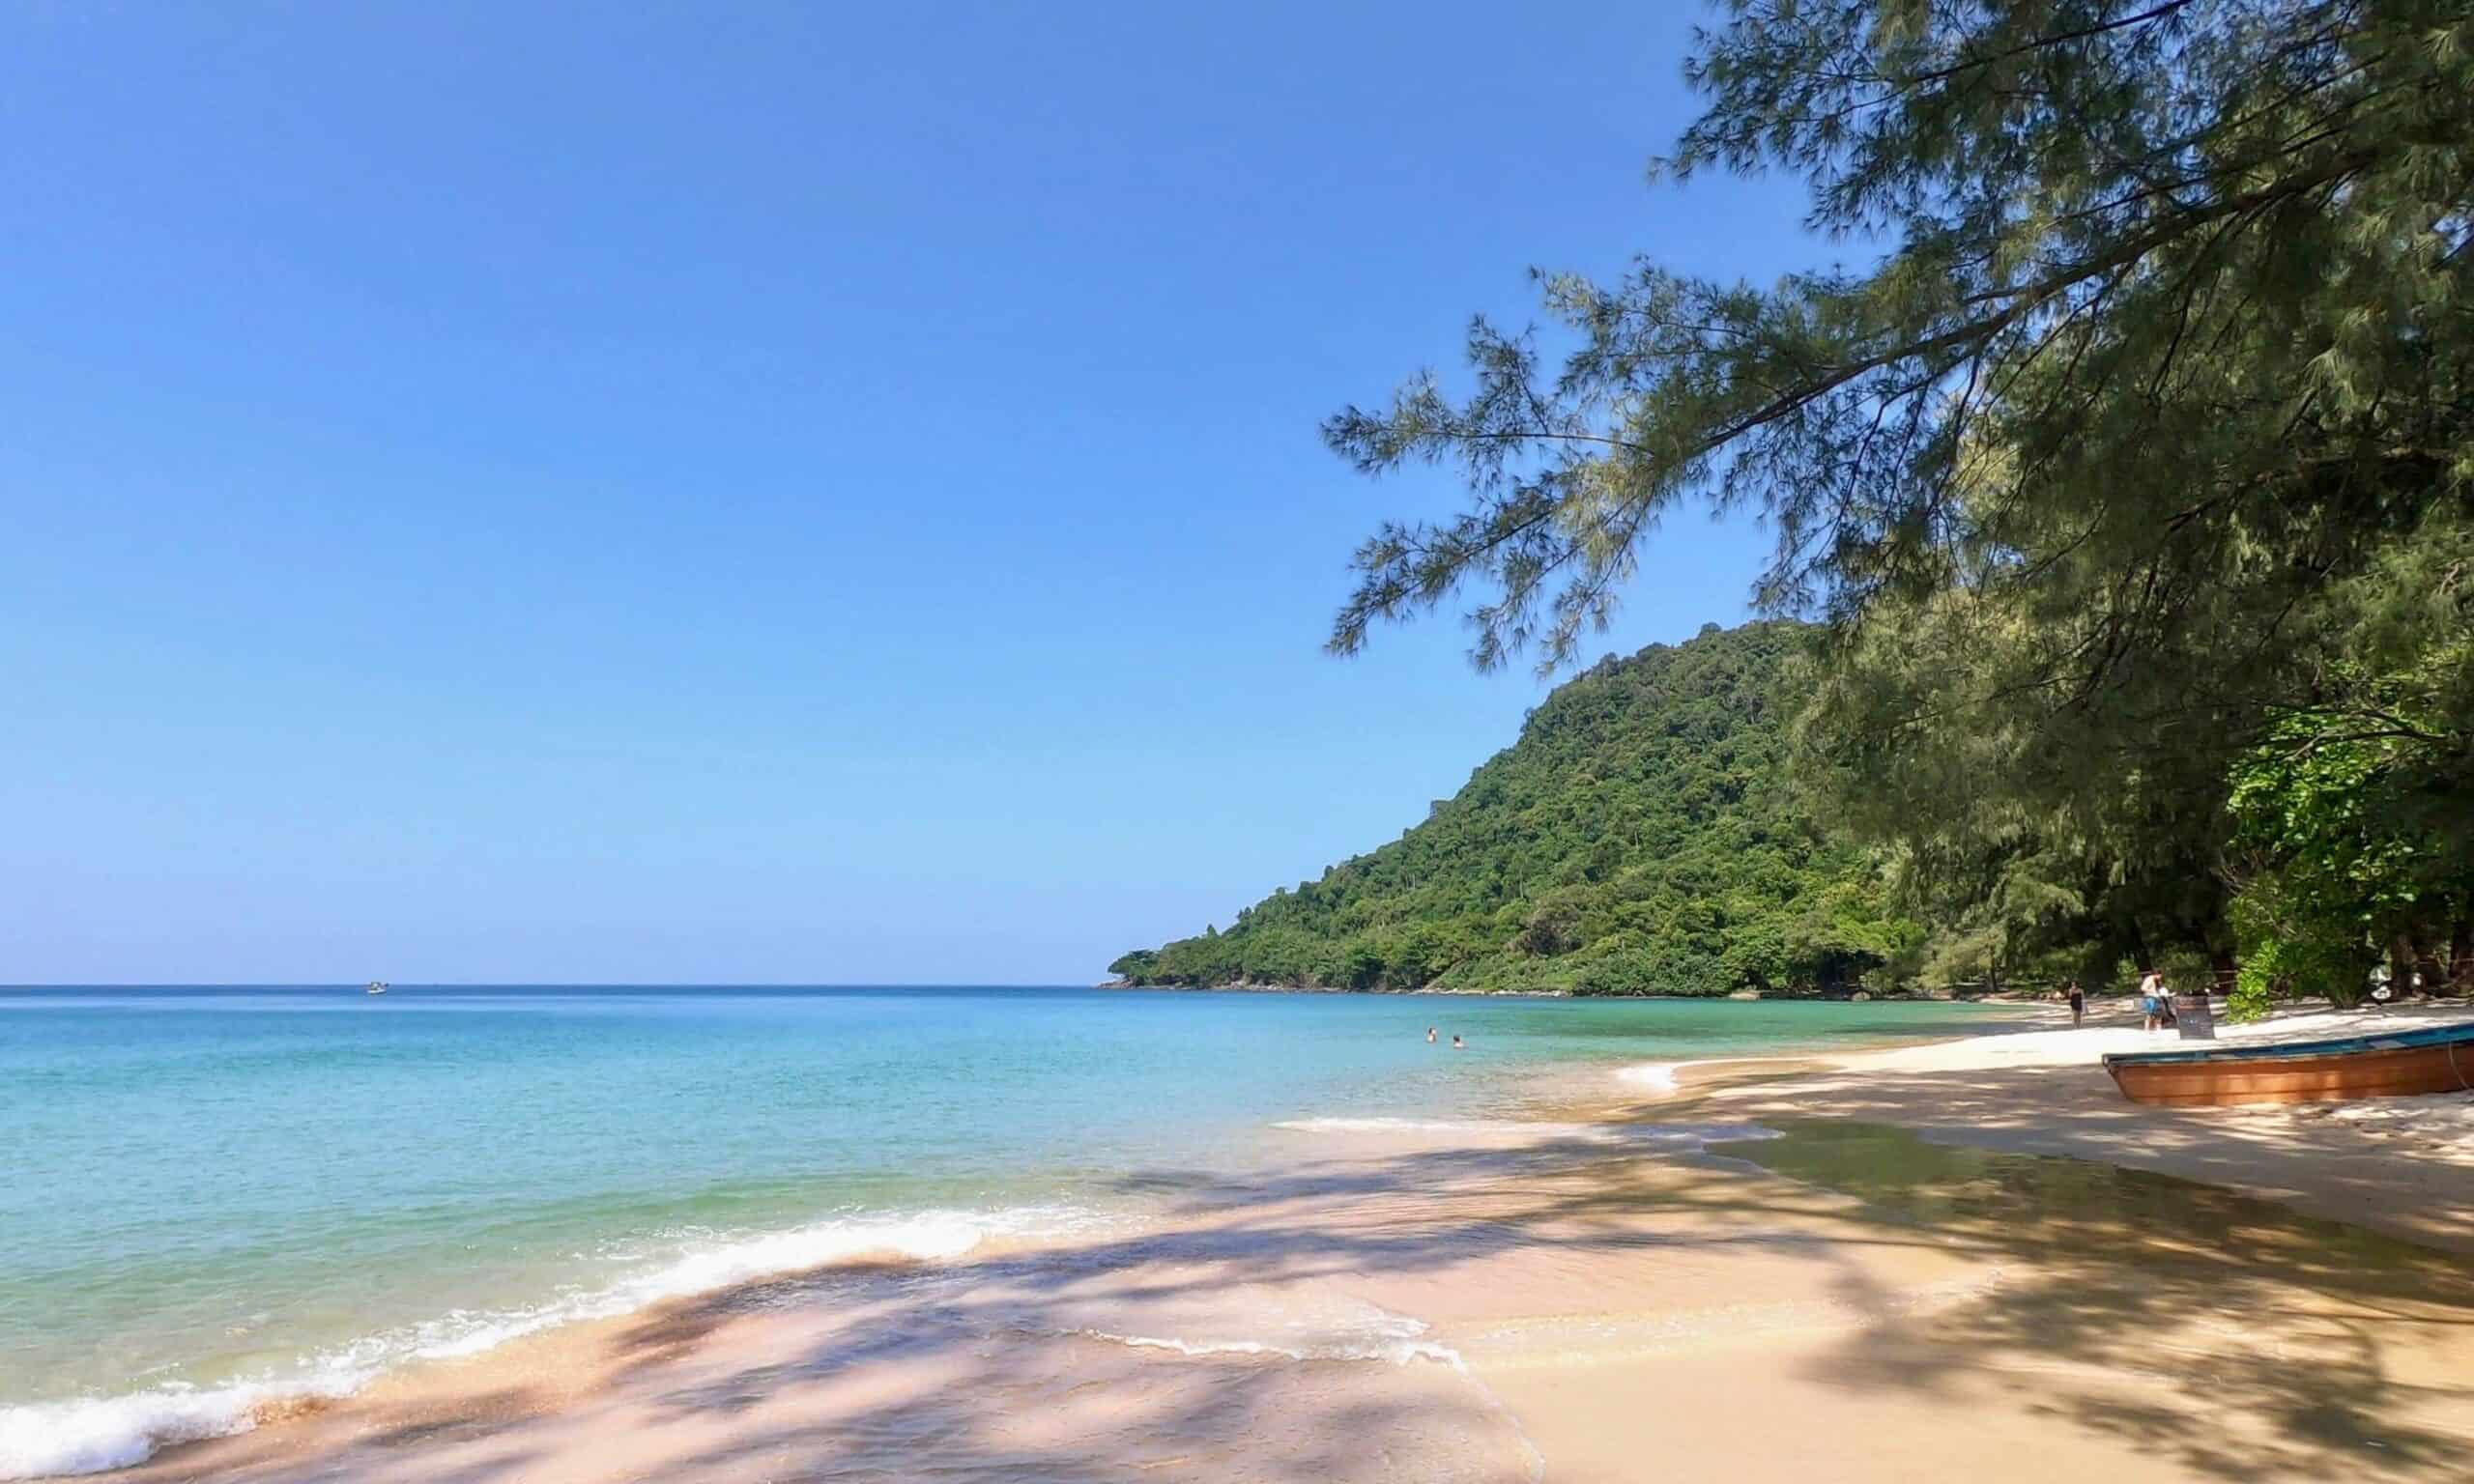 Koh Lanta The Beach - Phuket islands